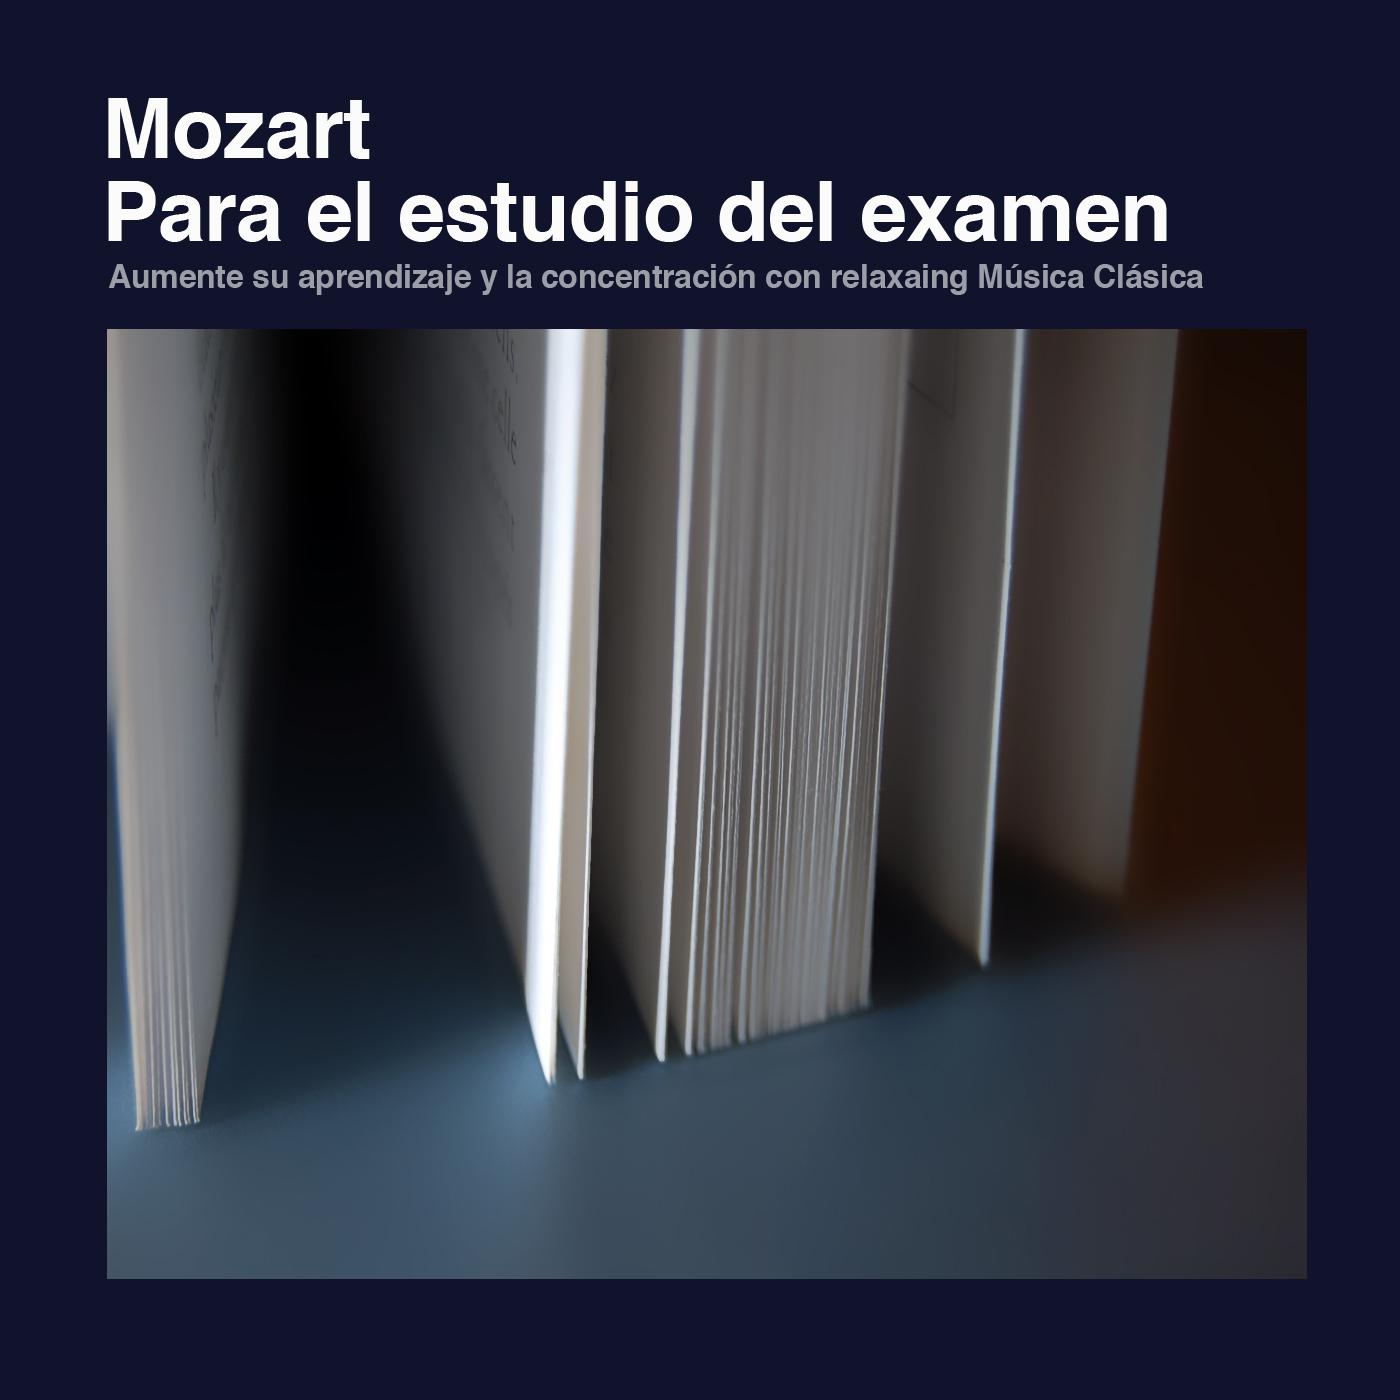 Mozart para el estudio del examen: Aumente su aprendizaje y la concentración con Música Clásica relajante